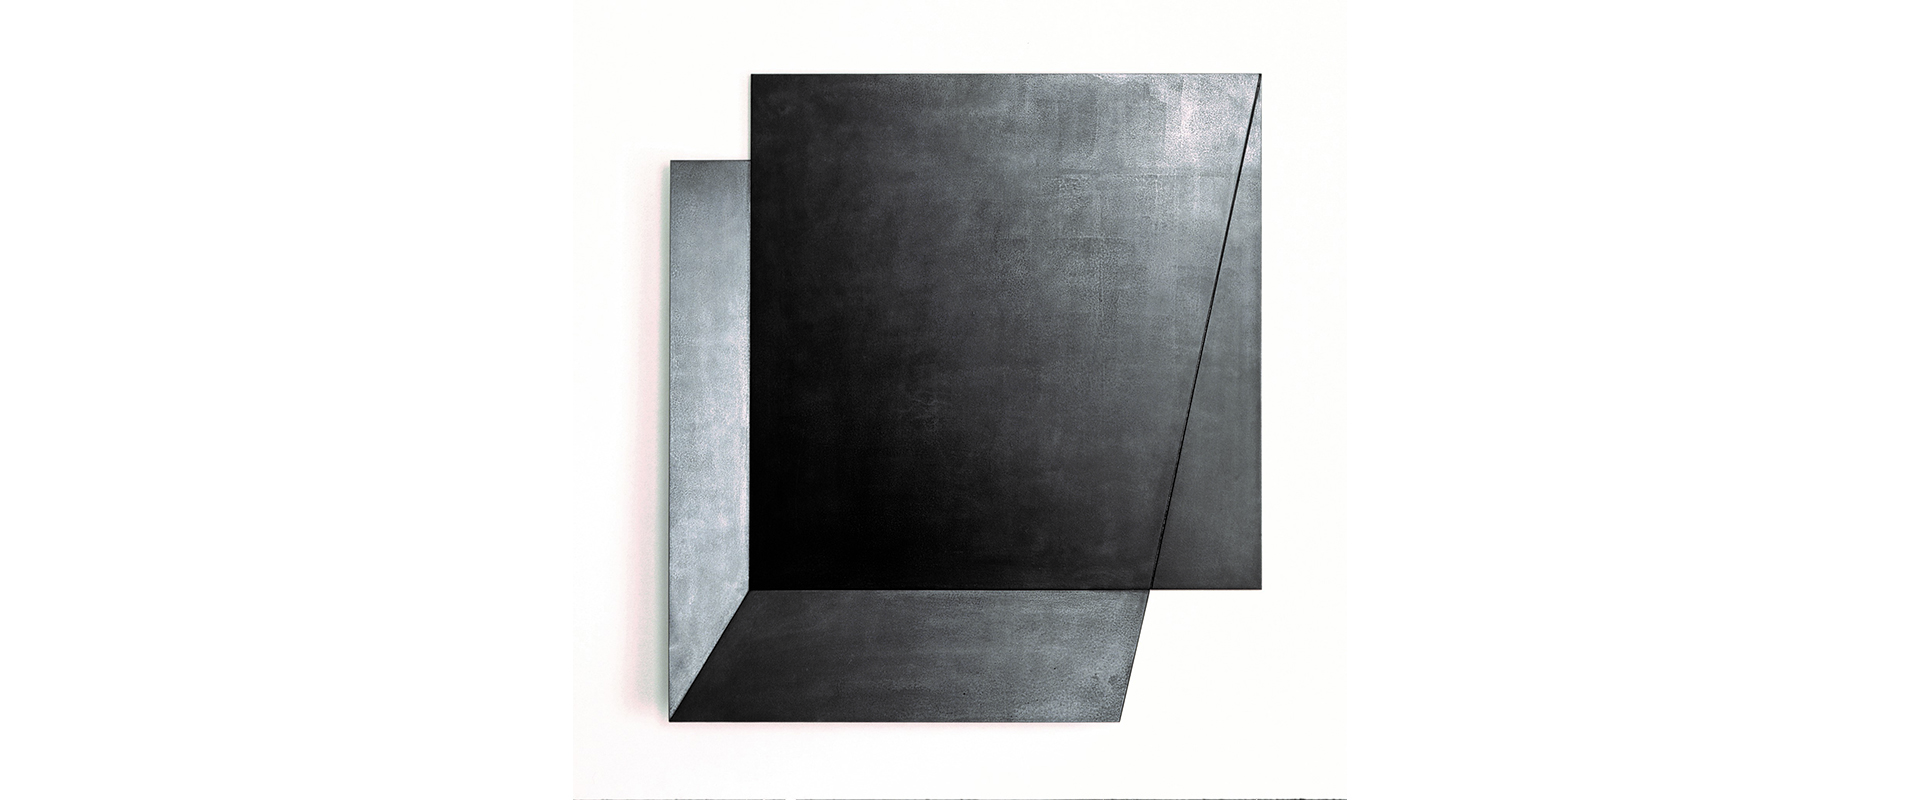 o.T. (WVZ 187) – 1993, Stahl, geschweißt, patiniert, 75 x 69 x 7 cm